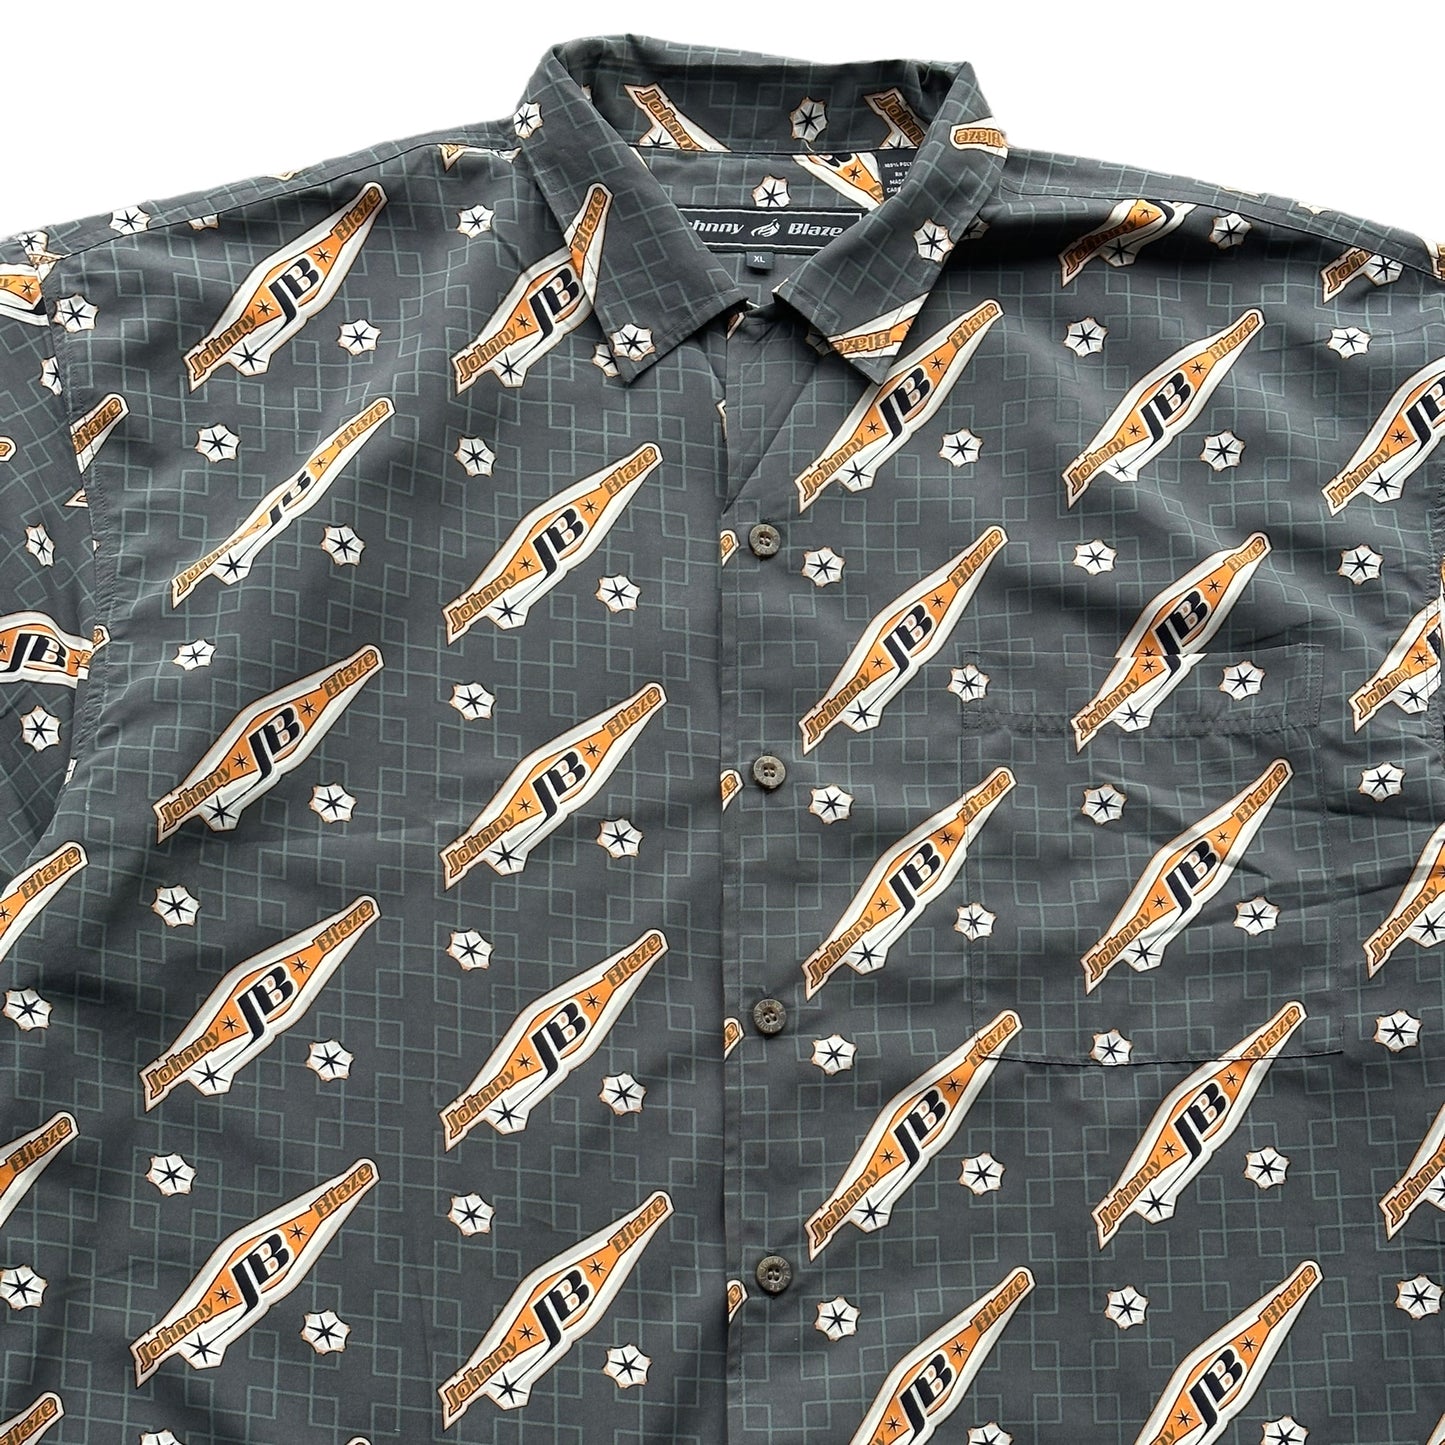 (XL) 00s Johnny Blaze Button-Up Shirt